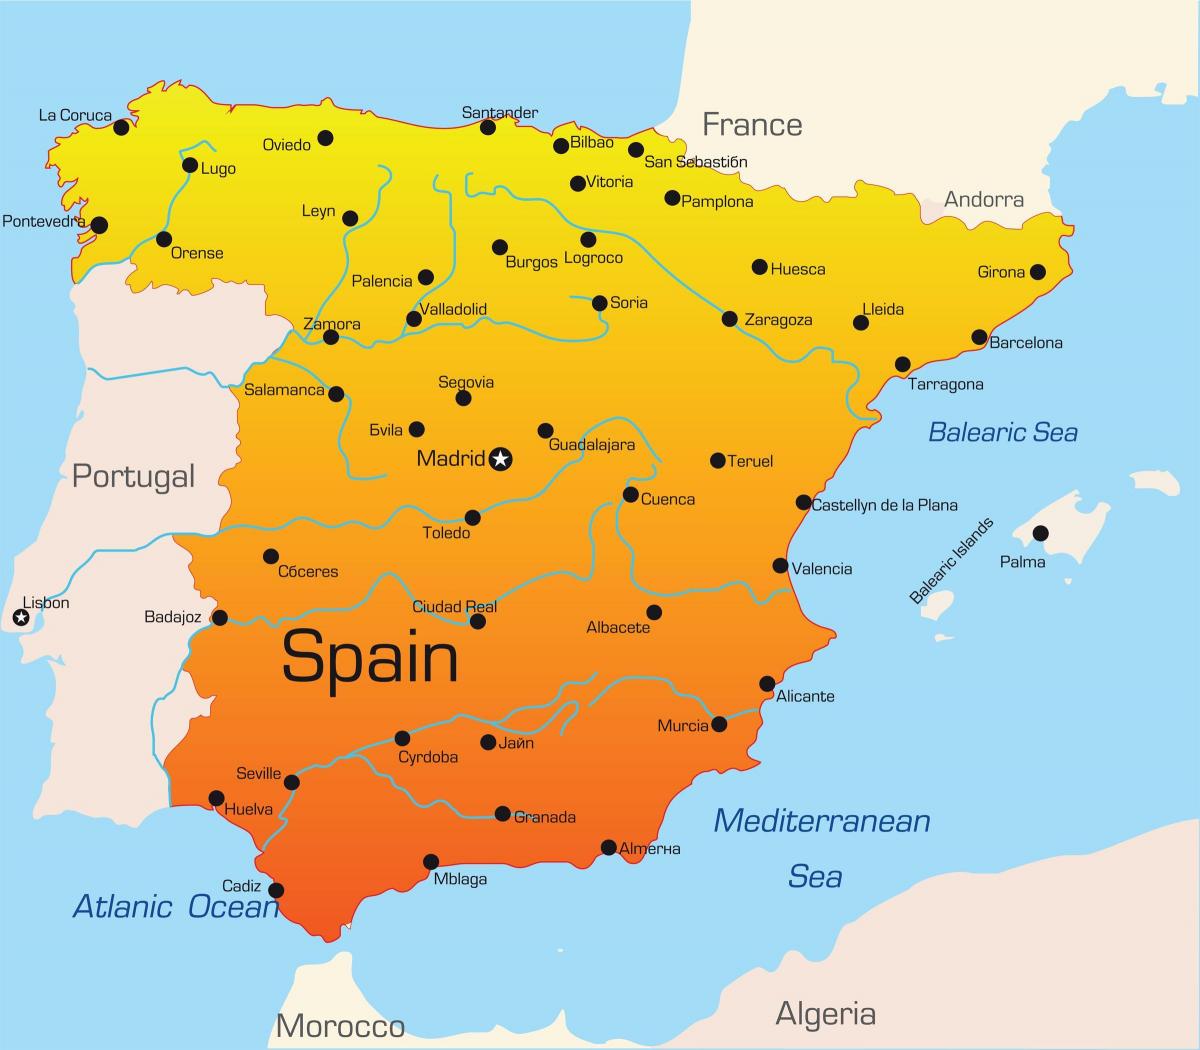 Urlaubsziele in Spanien anzeigen